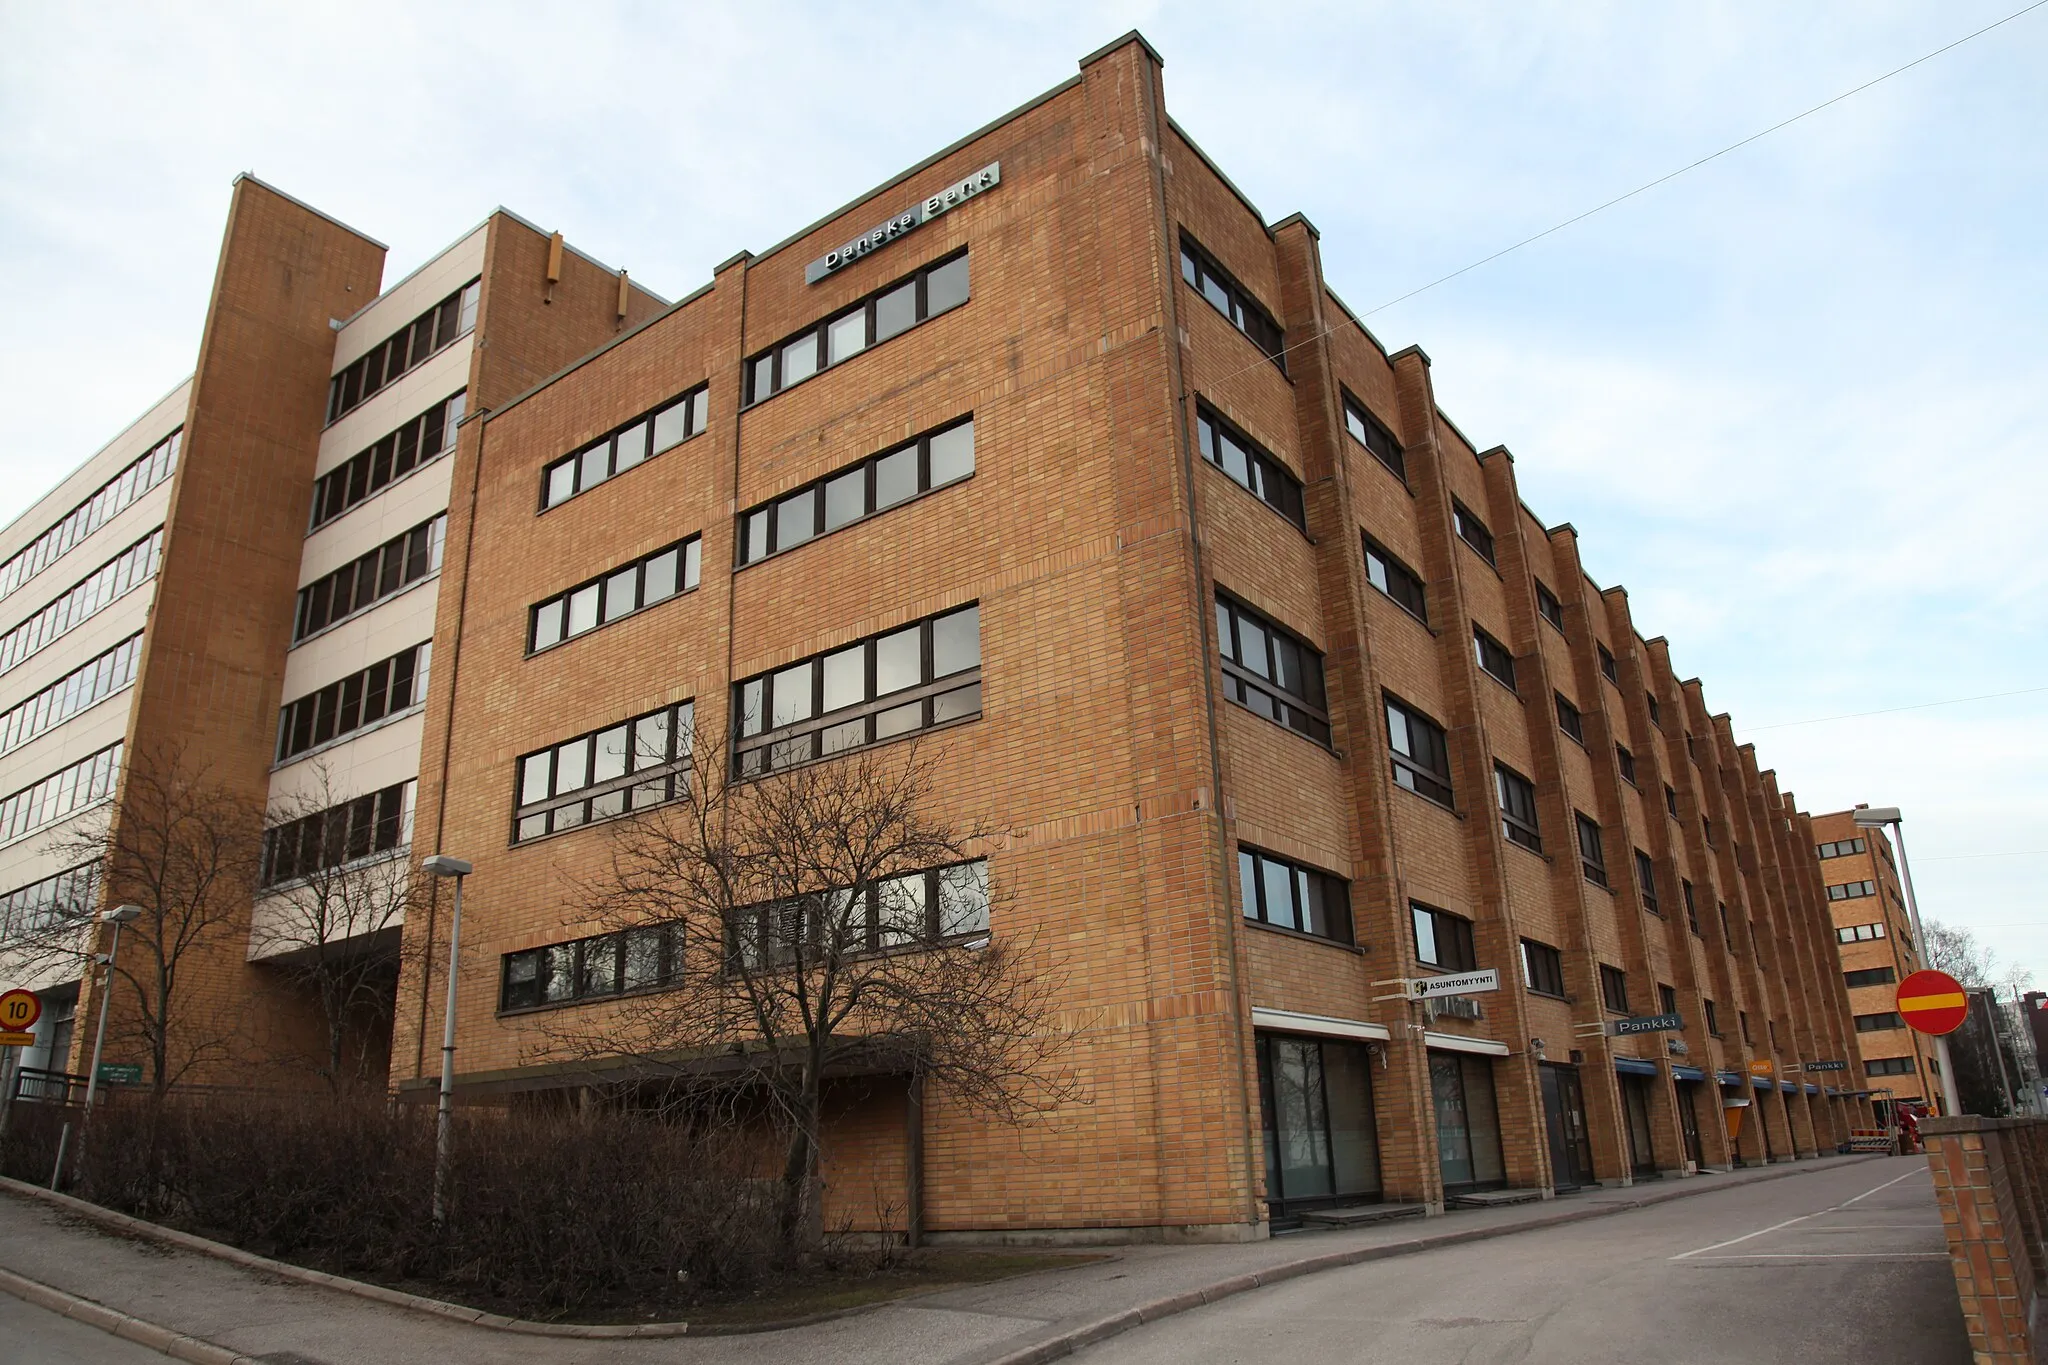 Photo showing: A Danske Bank building in Lassila, Helsinki, Finland.